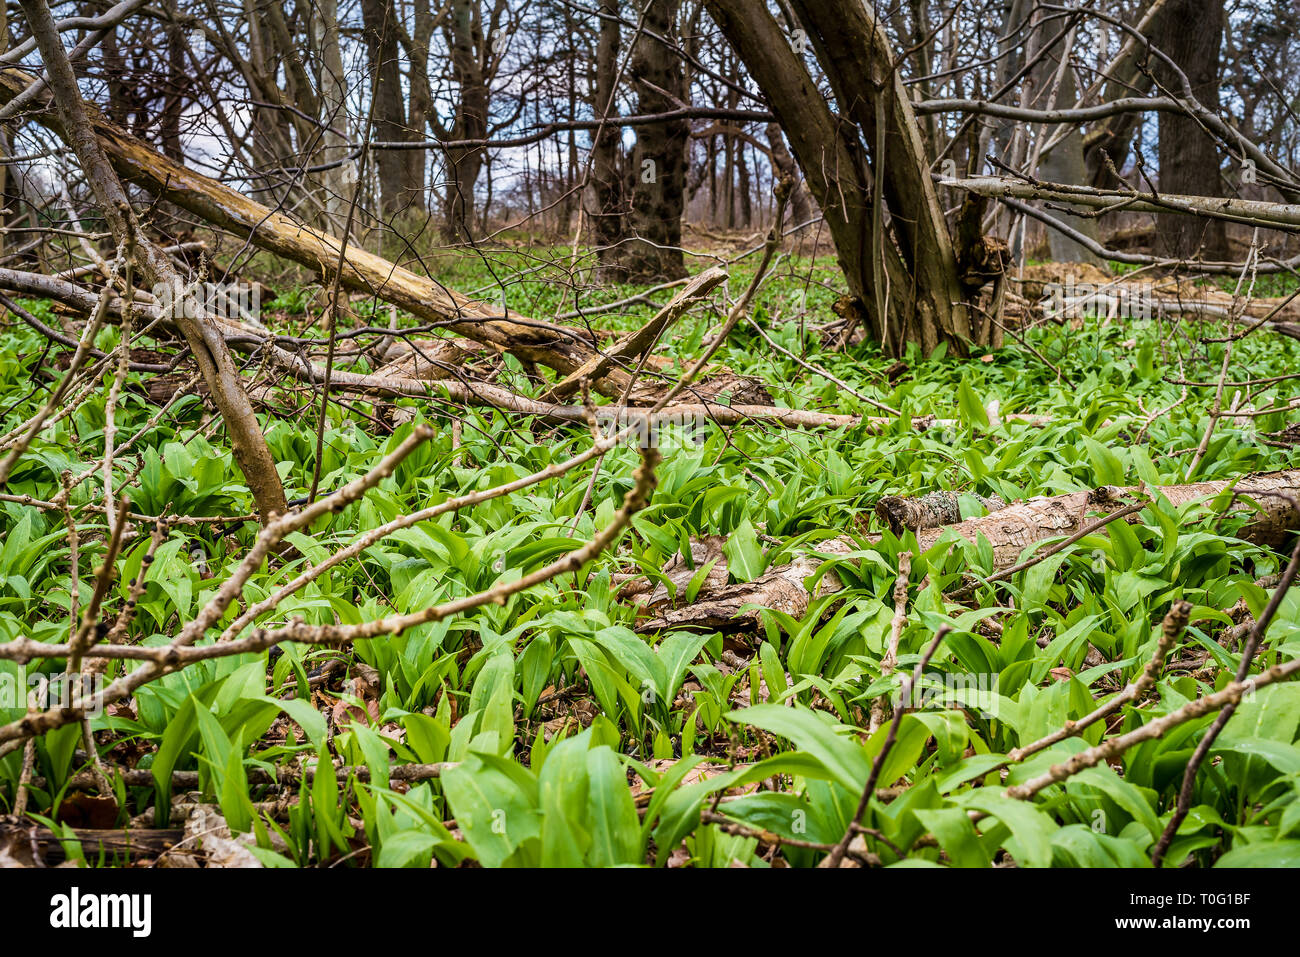 Ramson crescente tra i tronchi in un bosco incontaminato, Jagerspris, Danimarca, Marte 18, 2019 Foto Stock